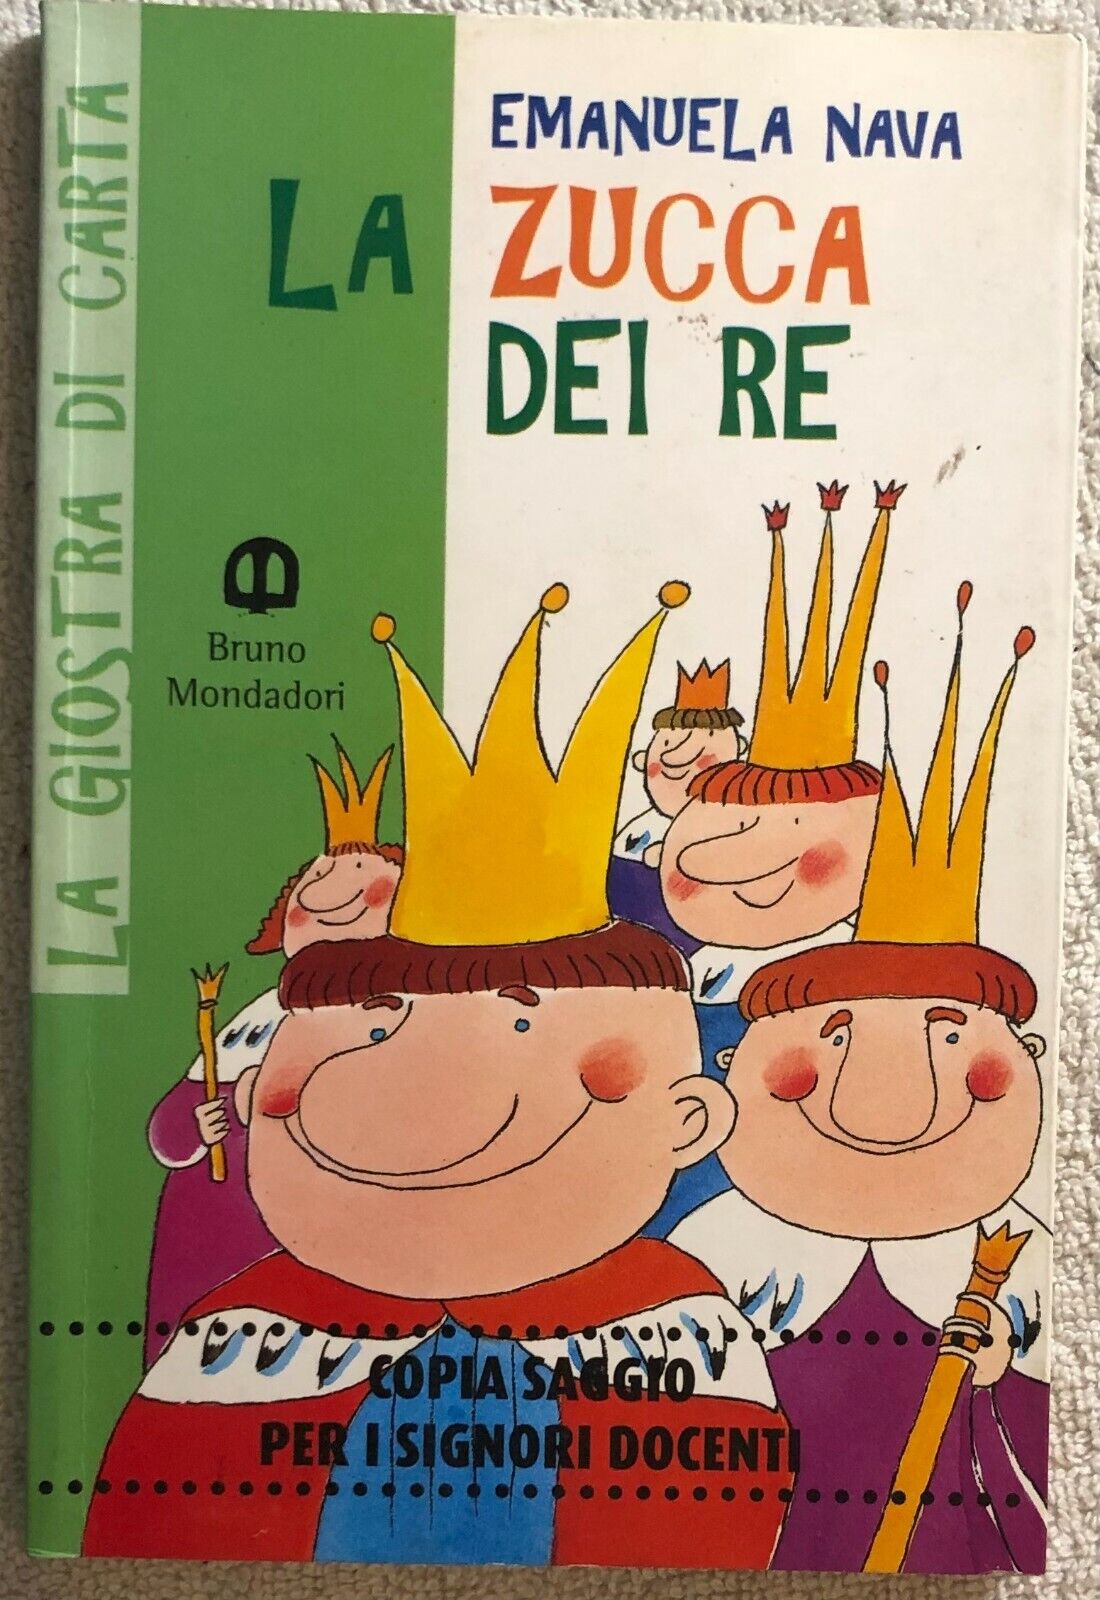 La zucca dei re di Emanuela Nava,  1998,  Scolastiche Bruno Mondadori